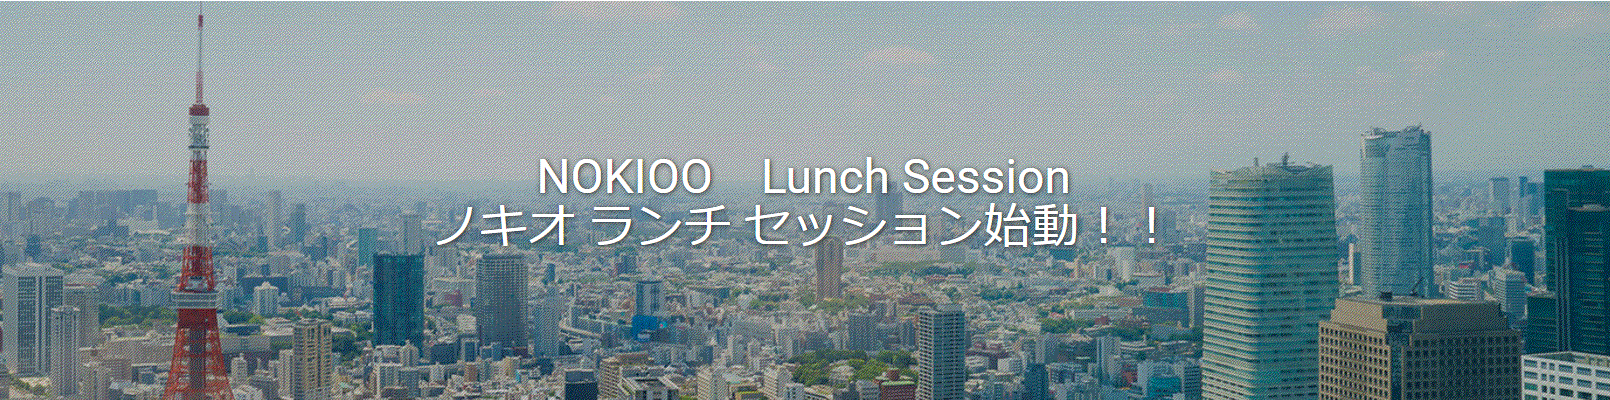 ノキオメンバーを指名してランチを一緒に「NOKIOO Lunch セッション」